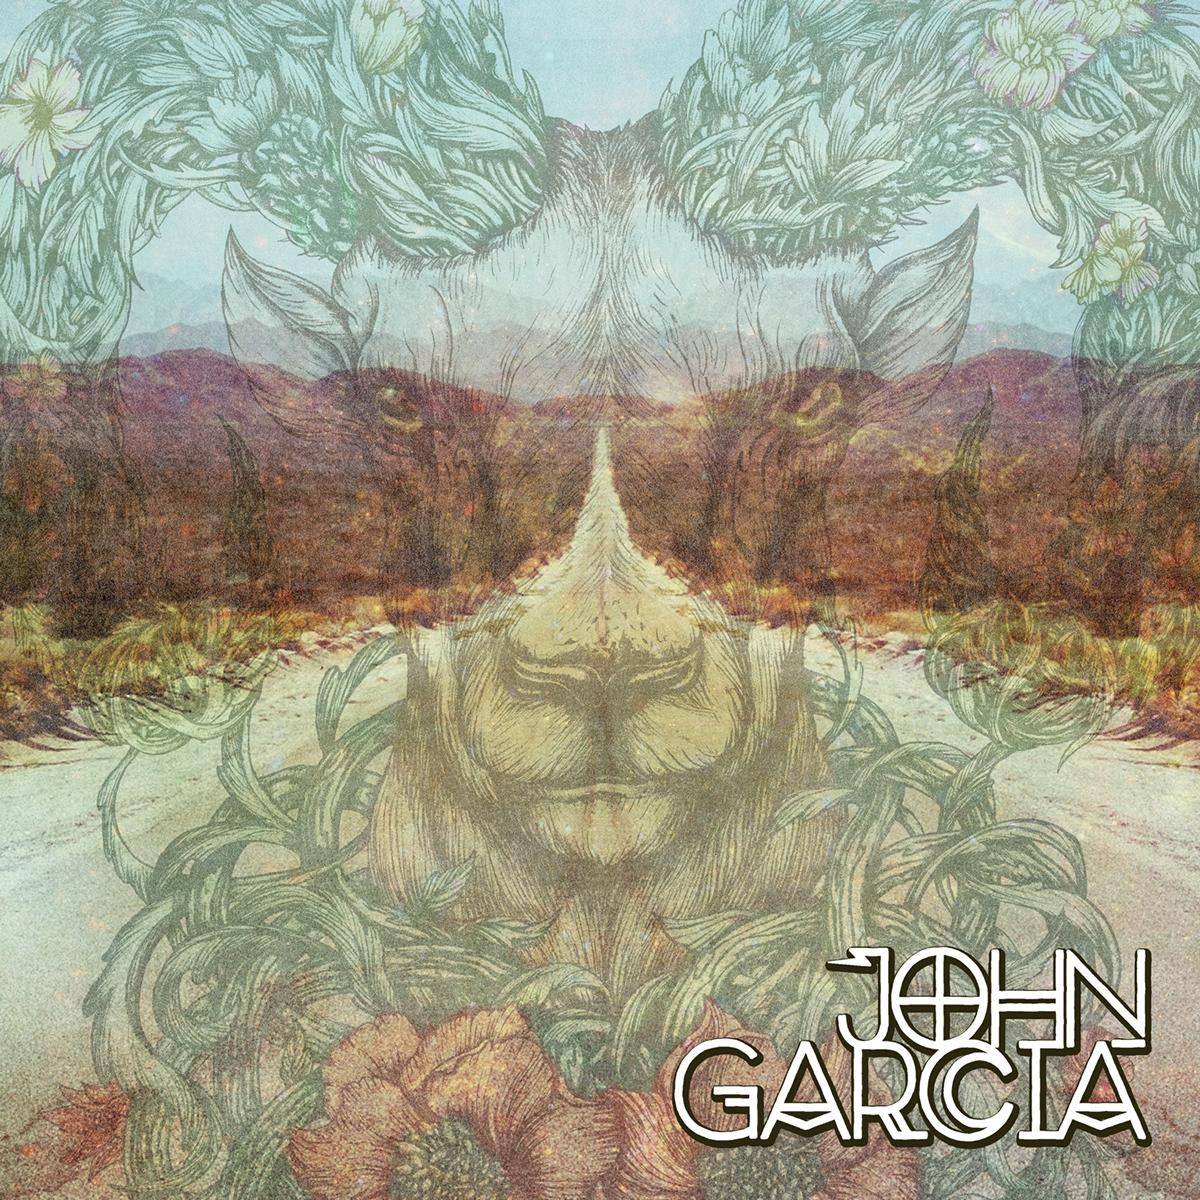 John Garcia Album 2